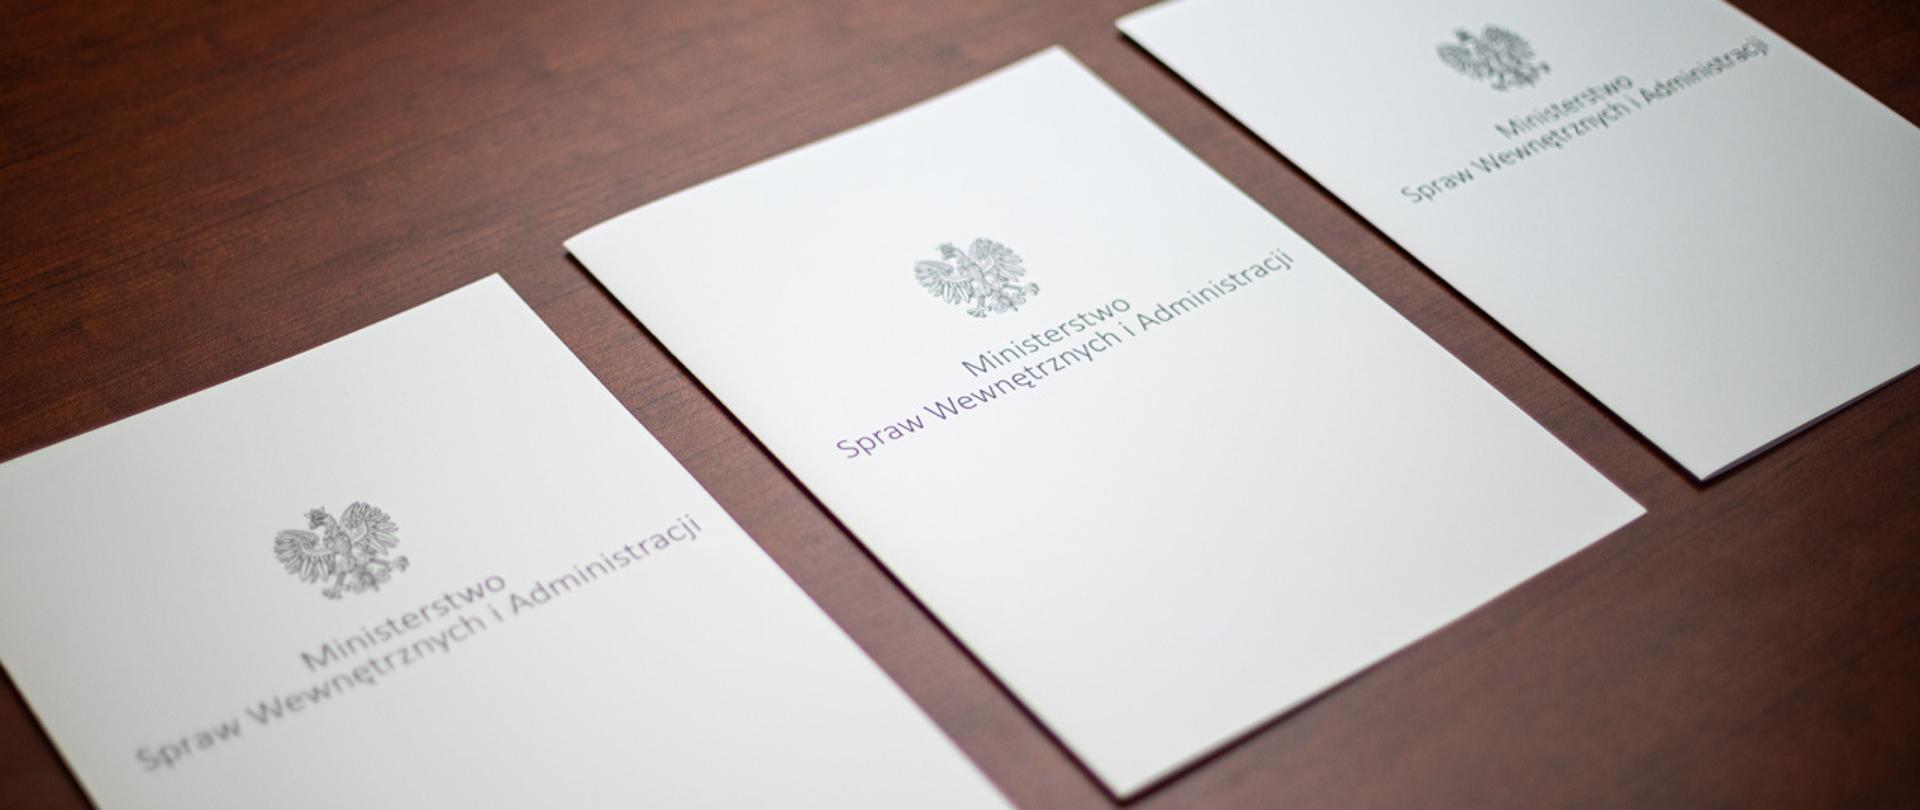 Na zdjęciu widać trzy leżące w rzędzie teczki na dokumenty z napisem "Ministerstwo Spraw Wewnętrznych i Administracji" i orłem z godła narodowego